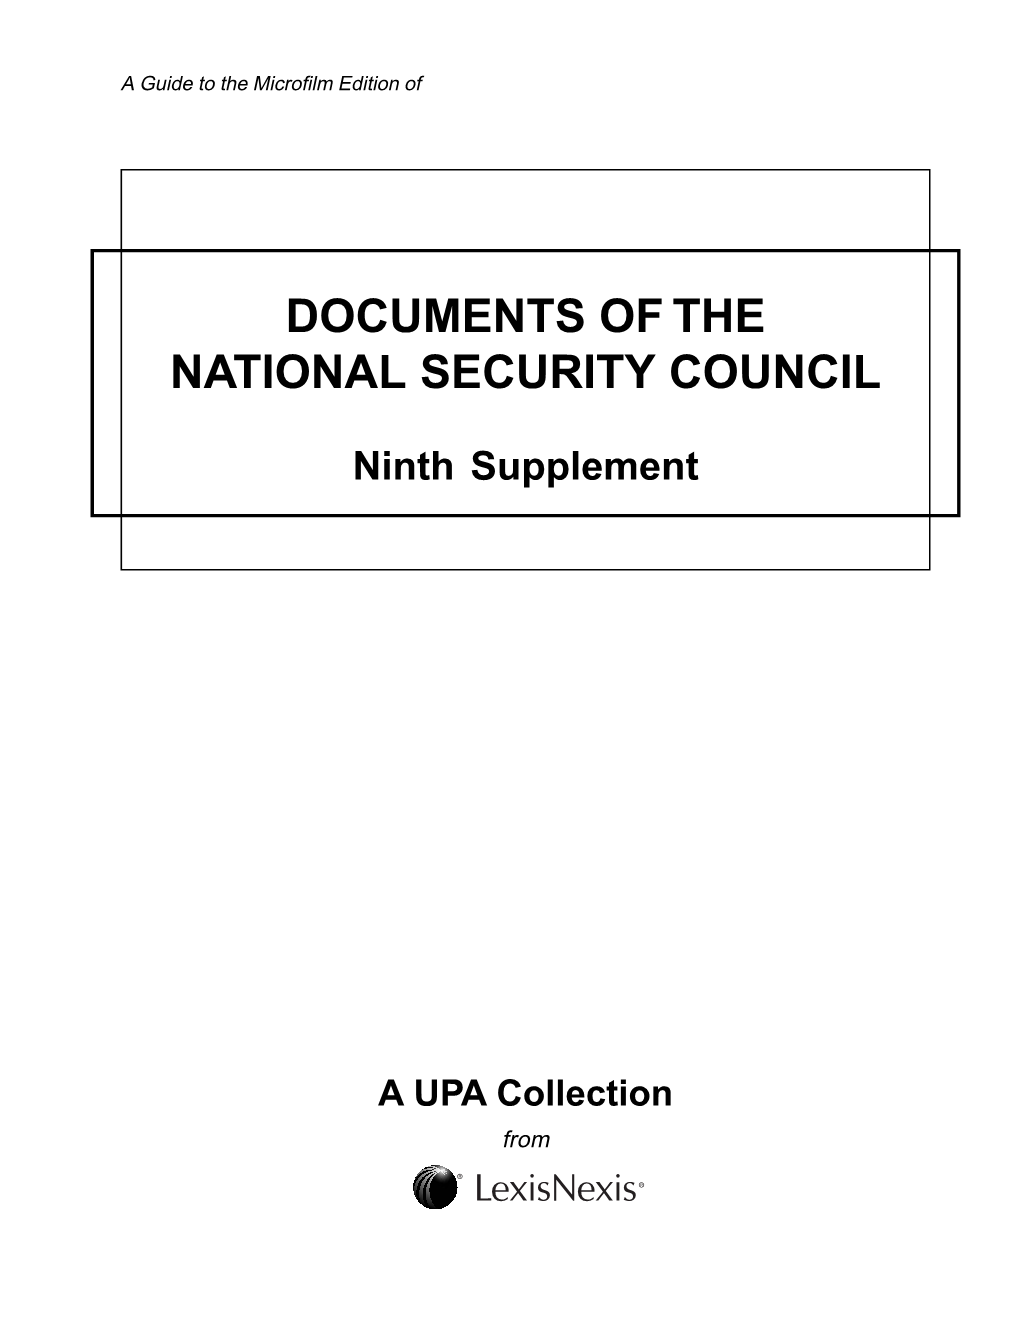 1947–1977 First Supplement–Ninth Supplement